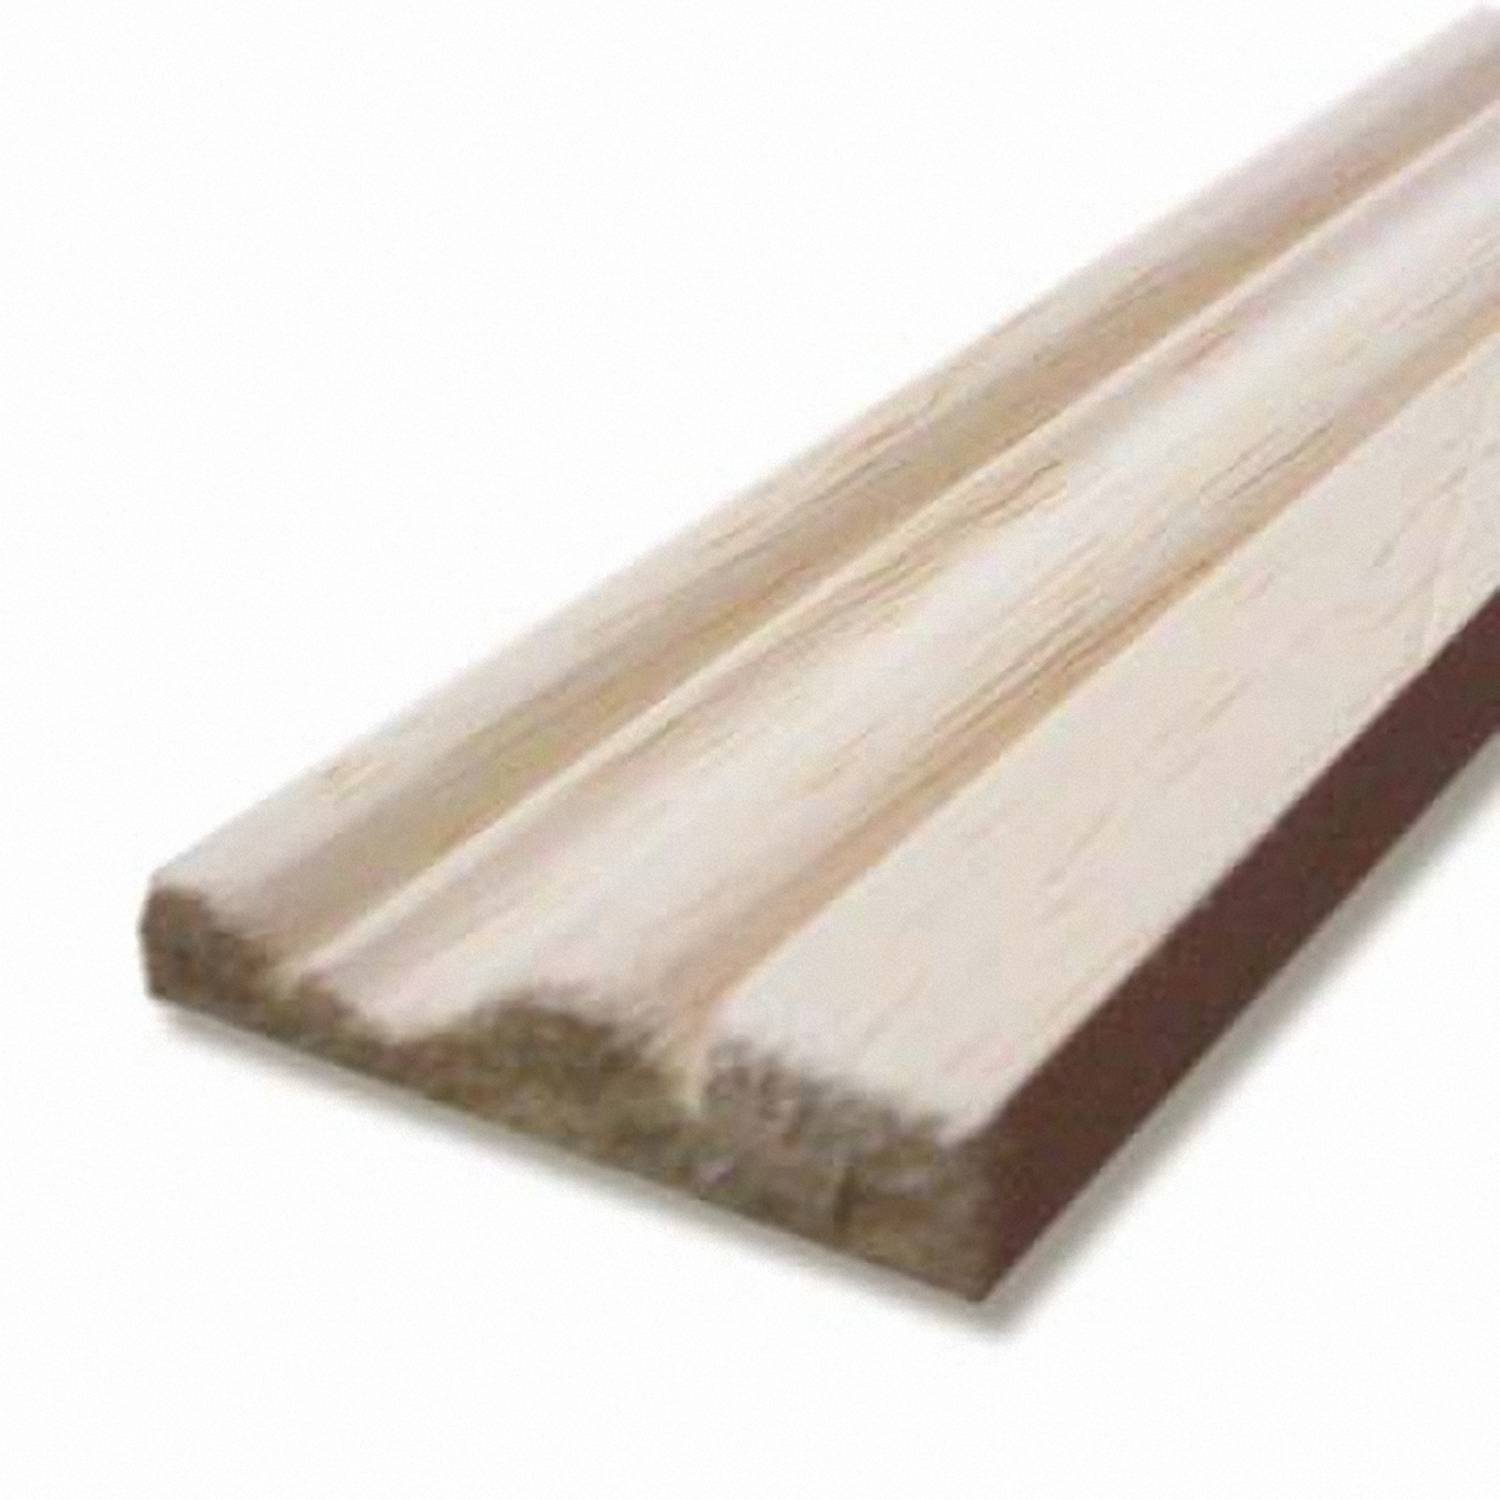 Chambranle bois exotique blanc. Section : 9 x 38 mm Longueur : 228 cm